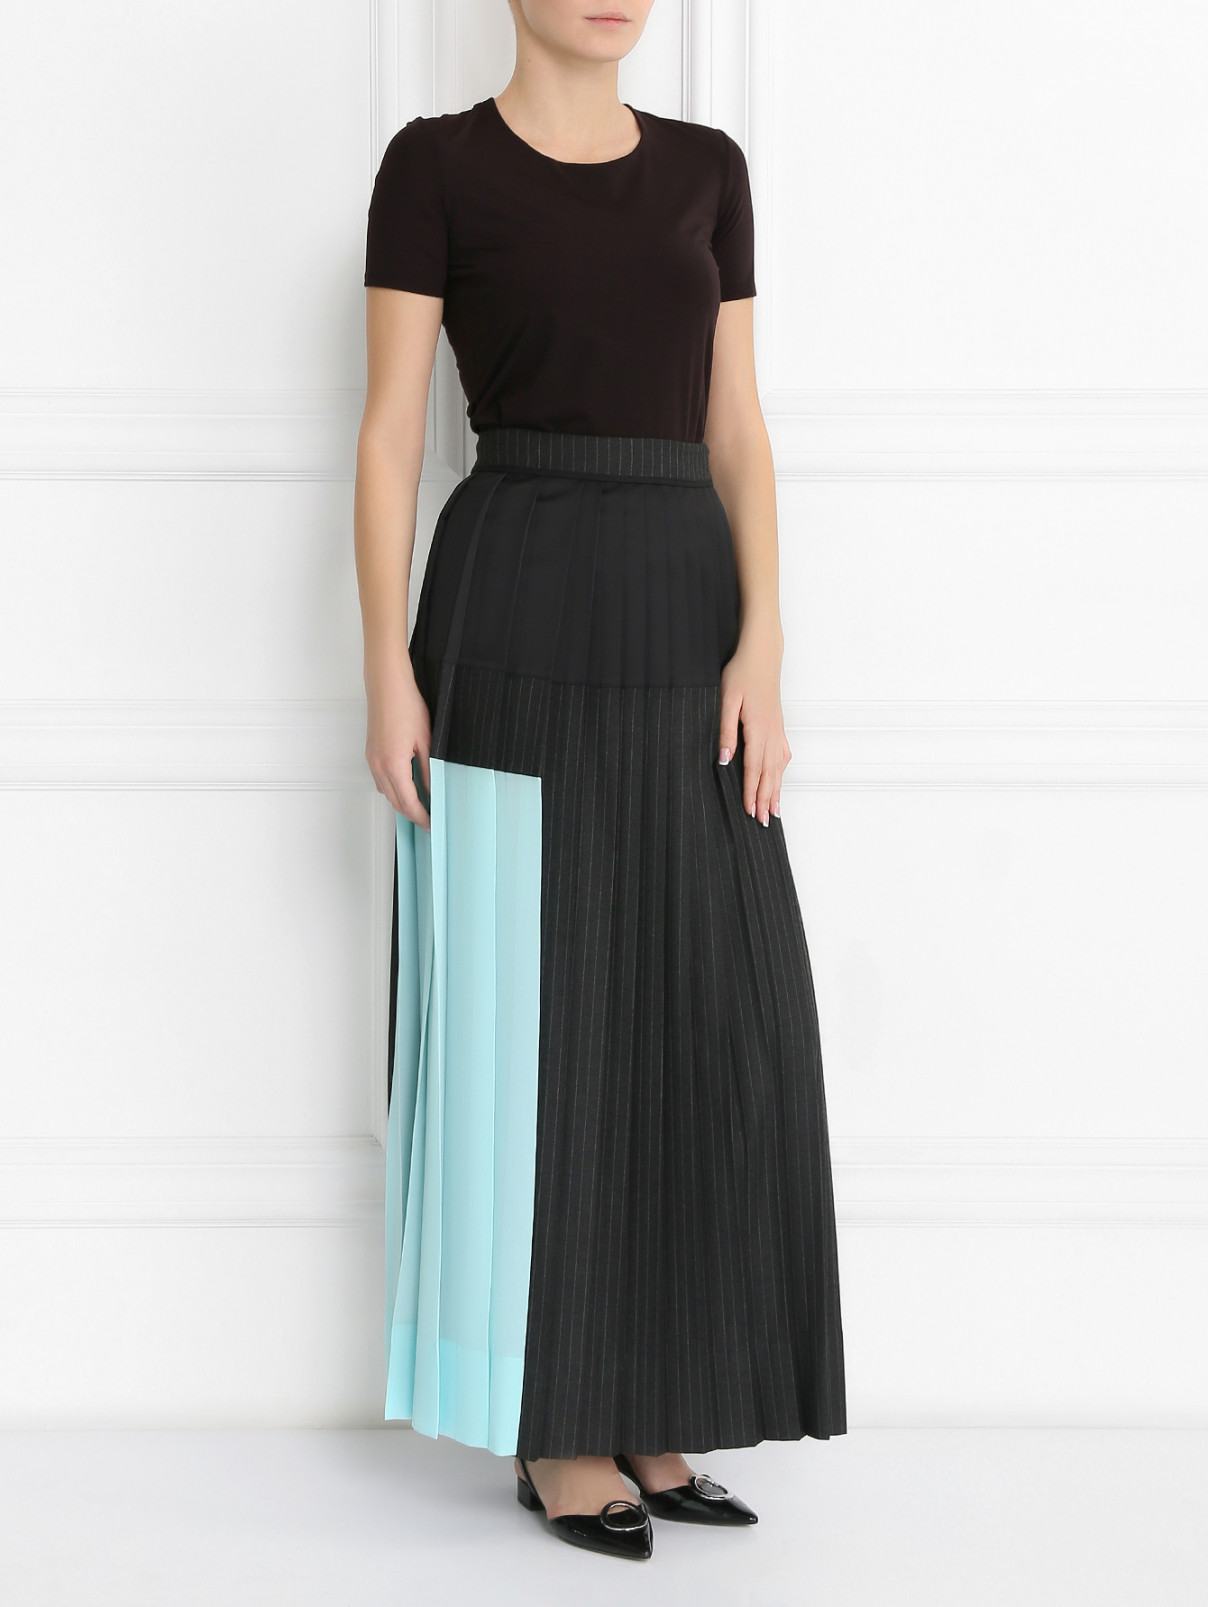 Плиссированная юбка-макси Antonio Marras  –  Модель Общий вид  – Цвет:  Черный